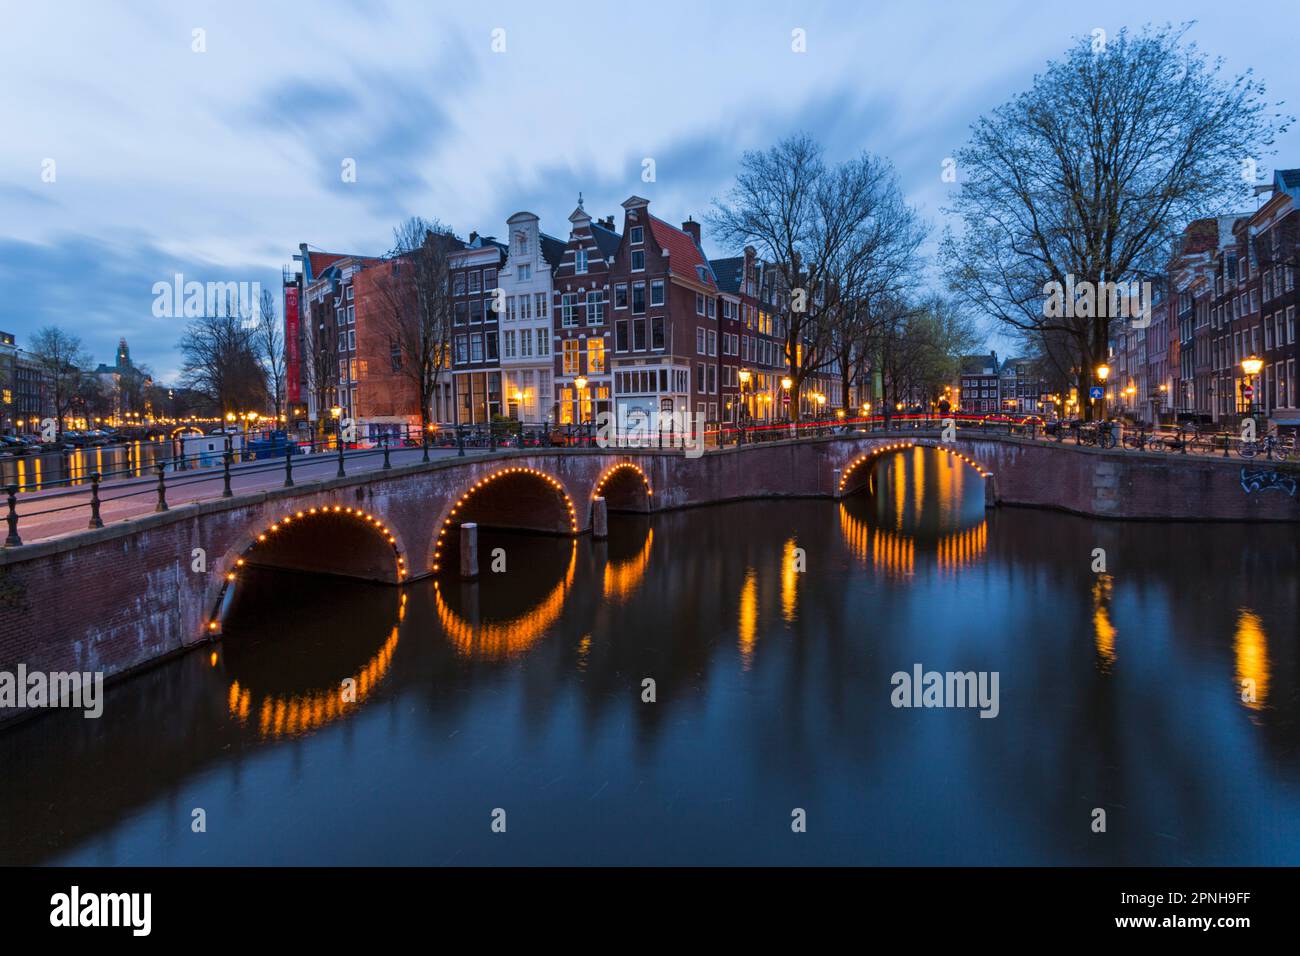 Ponti illuminati al crepuscolo ora blu ad Amsterdam, Olanda, Paesi Bassi nel mese di aprile - lunga esposizione Foto Stock